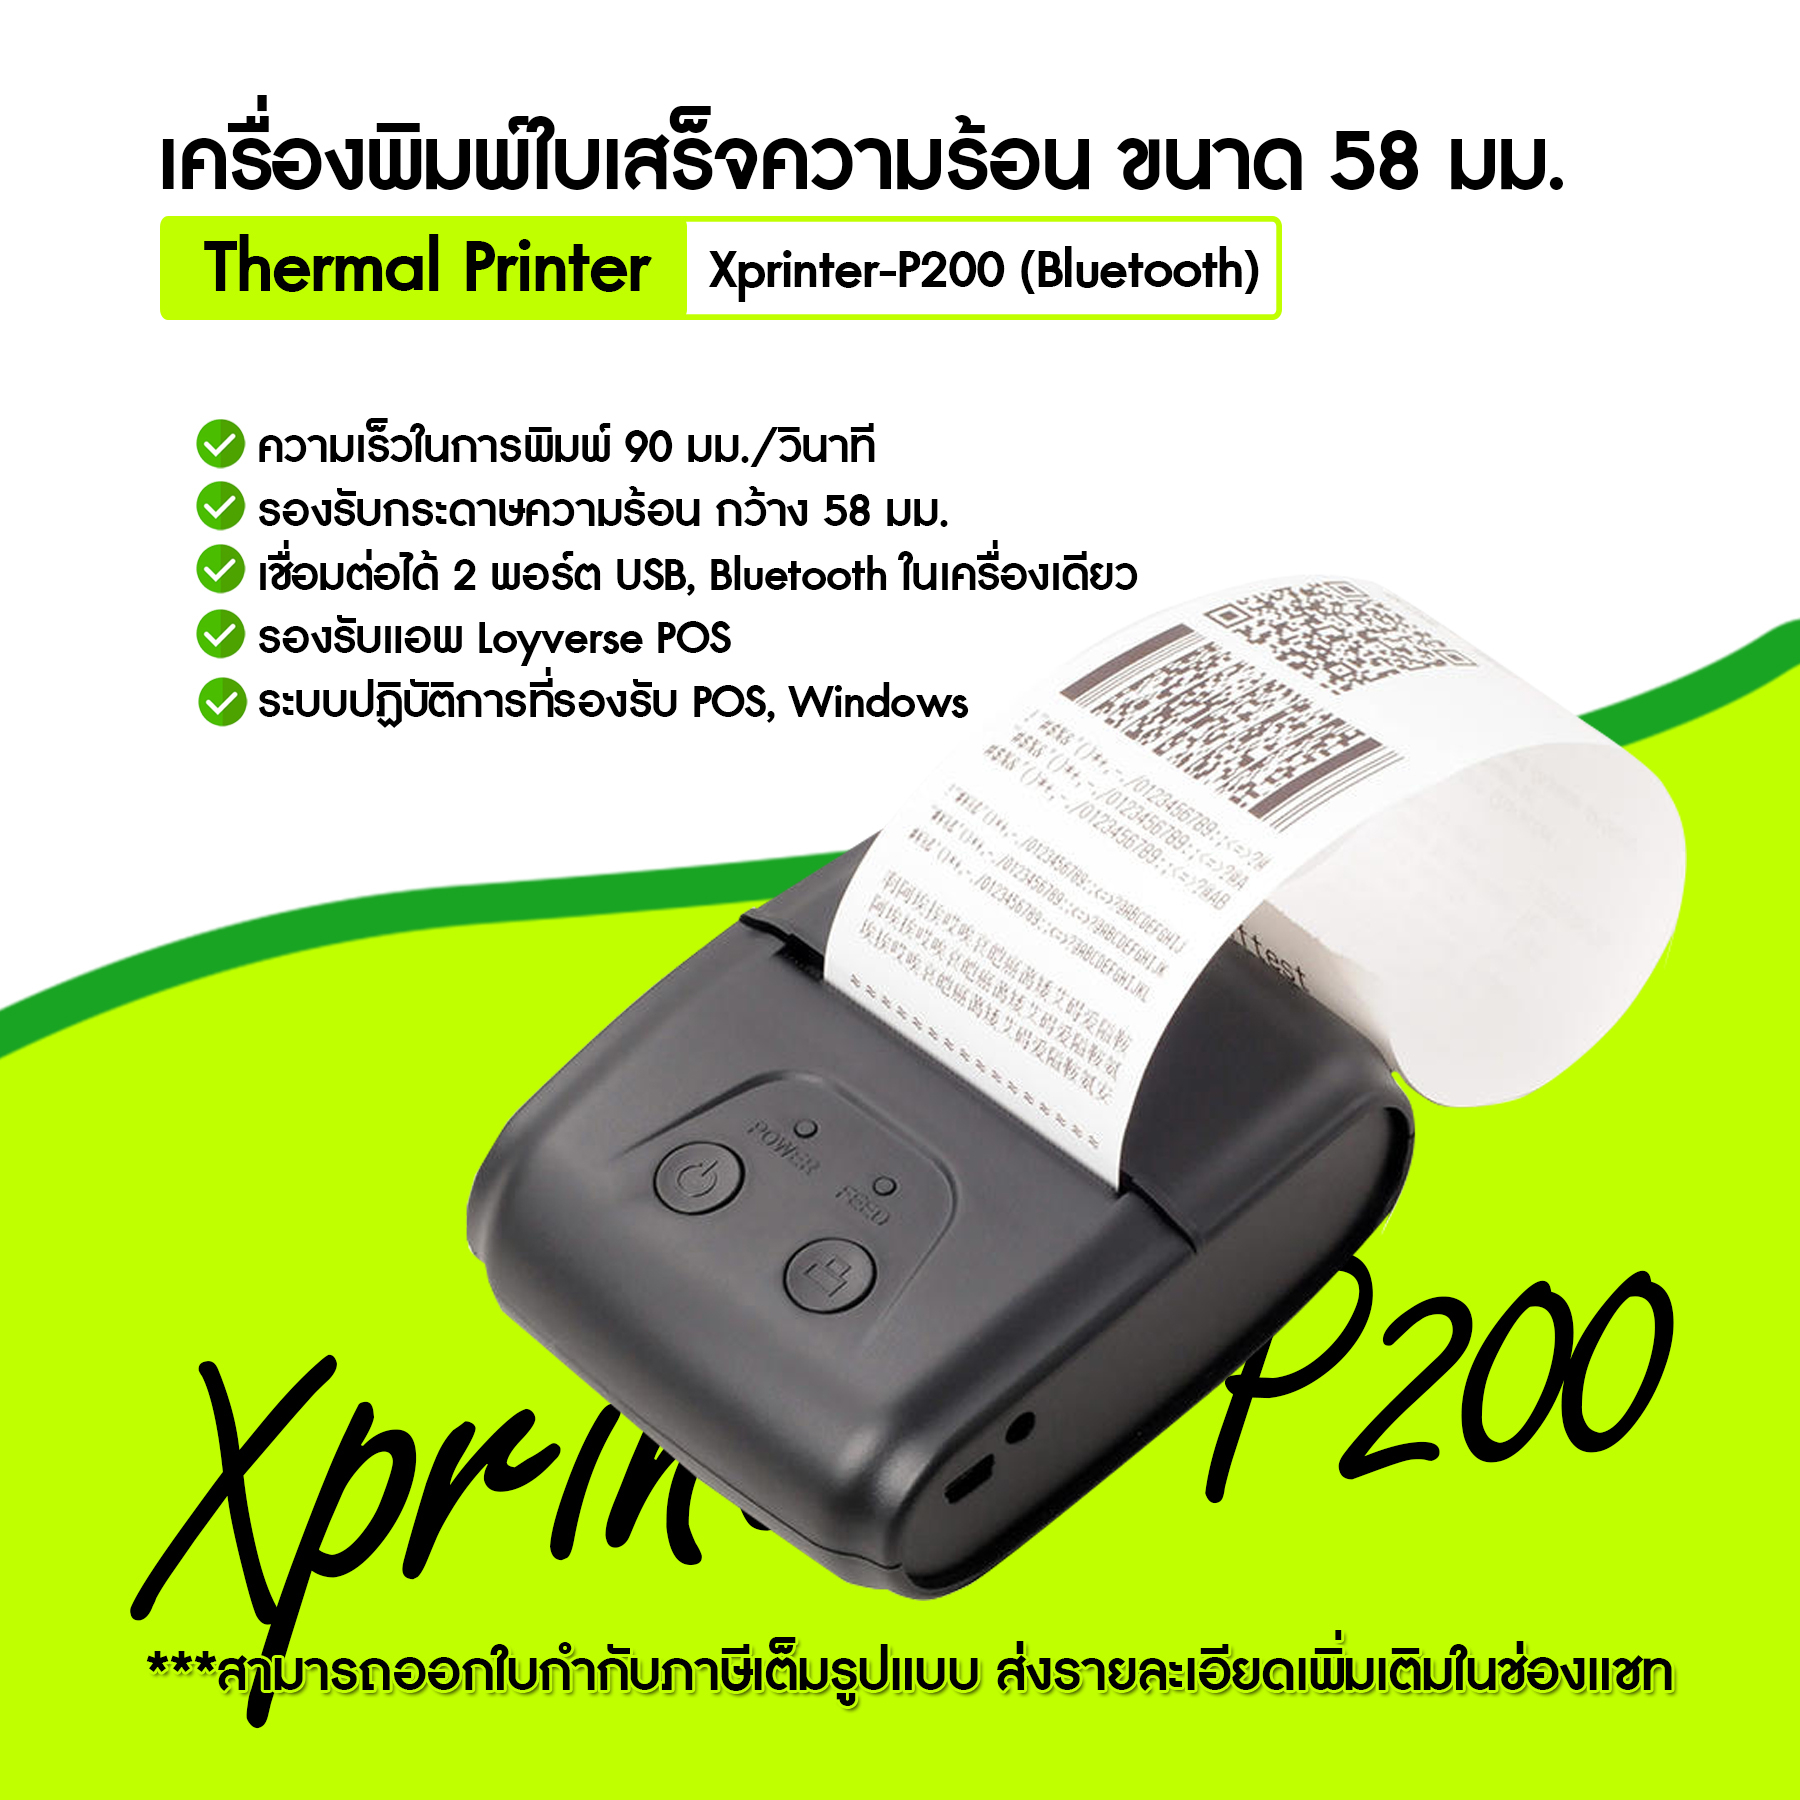 [ใส่โค้ด INCLZ77 ลดเพิ่ม 50%] 🔥 Xprinter รุ่น XP-P200 เครื่องพิมพ์ใบเสร็จบลูทูธแบบพกพา Loyverse เคาเตอร์ Airpay สลิปต่างๆ ระบบ Android  🔥